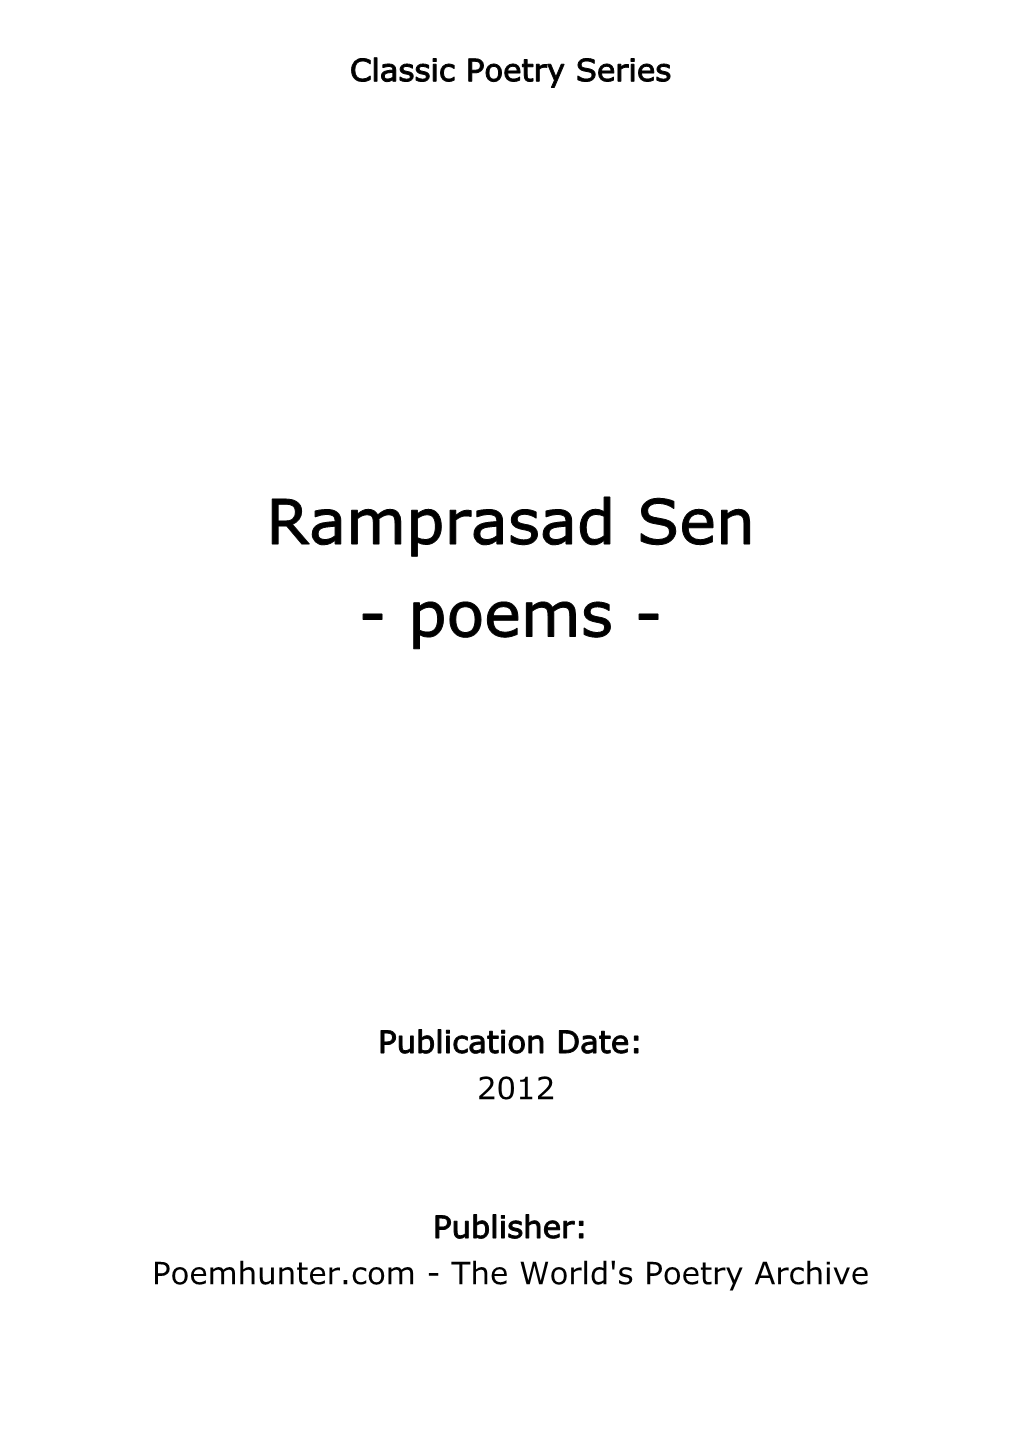 Ramprasad Sen - Poems